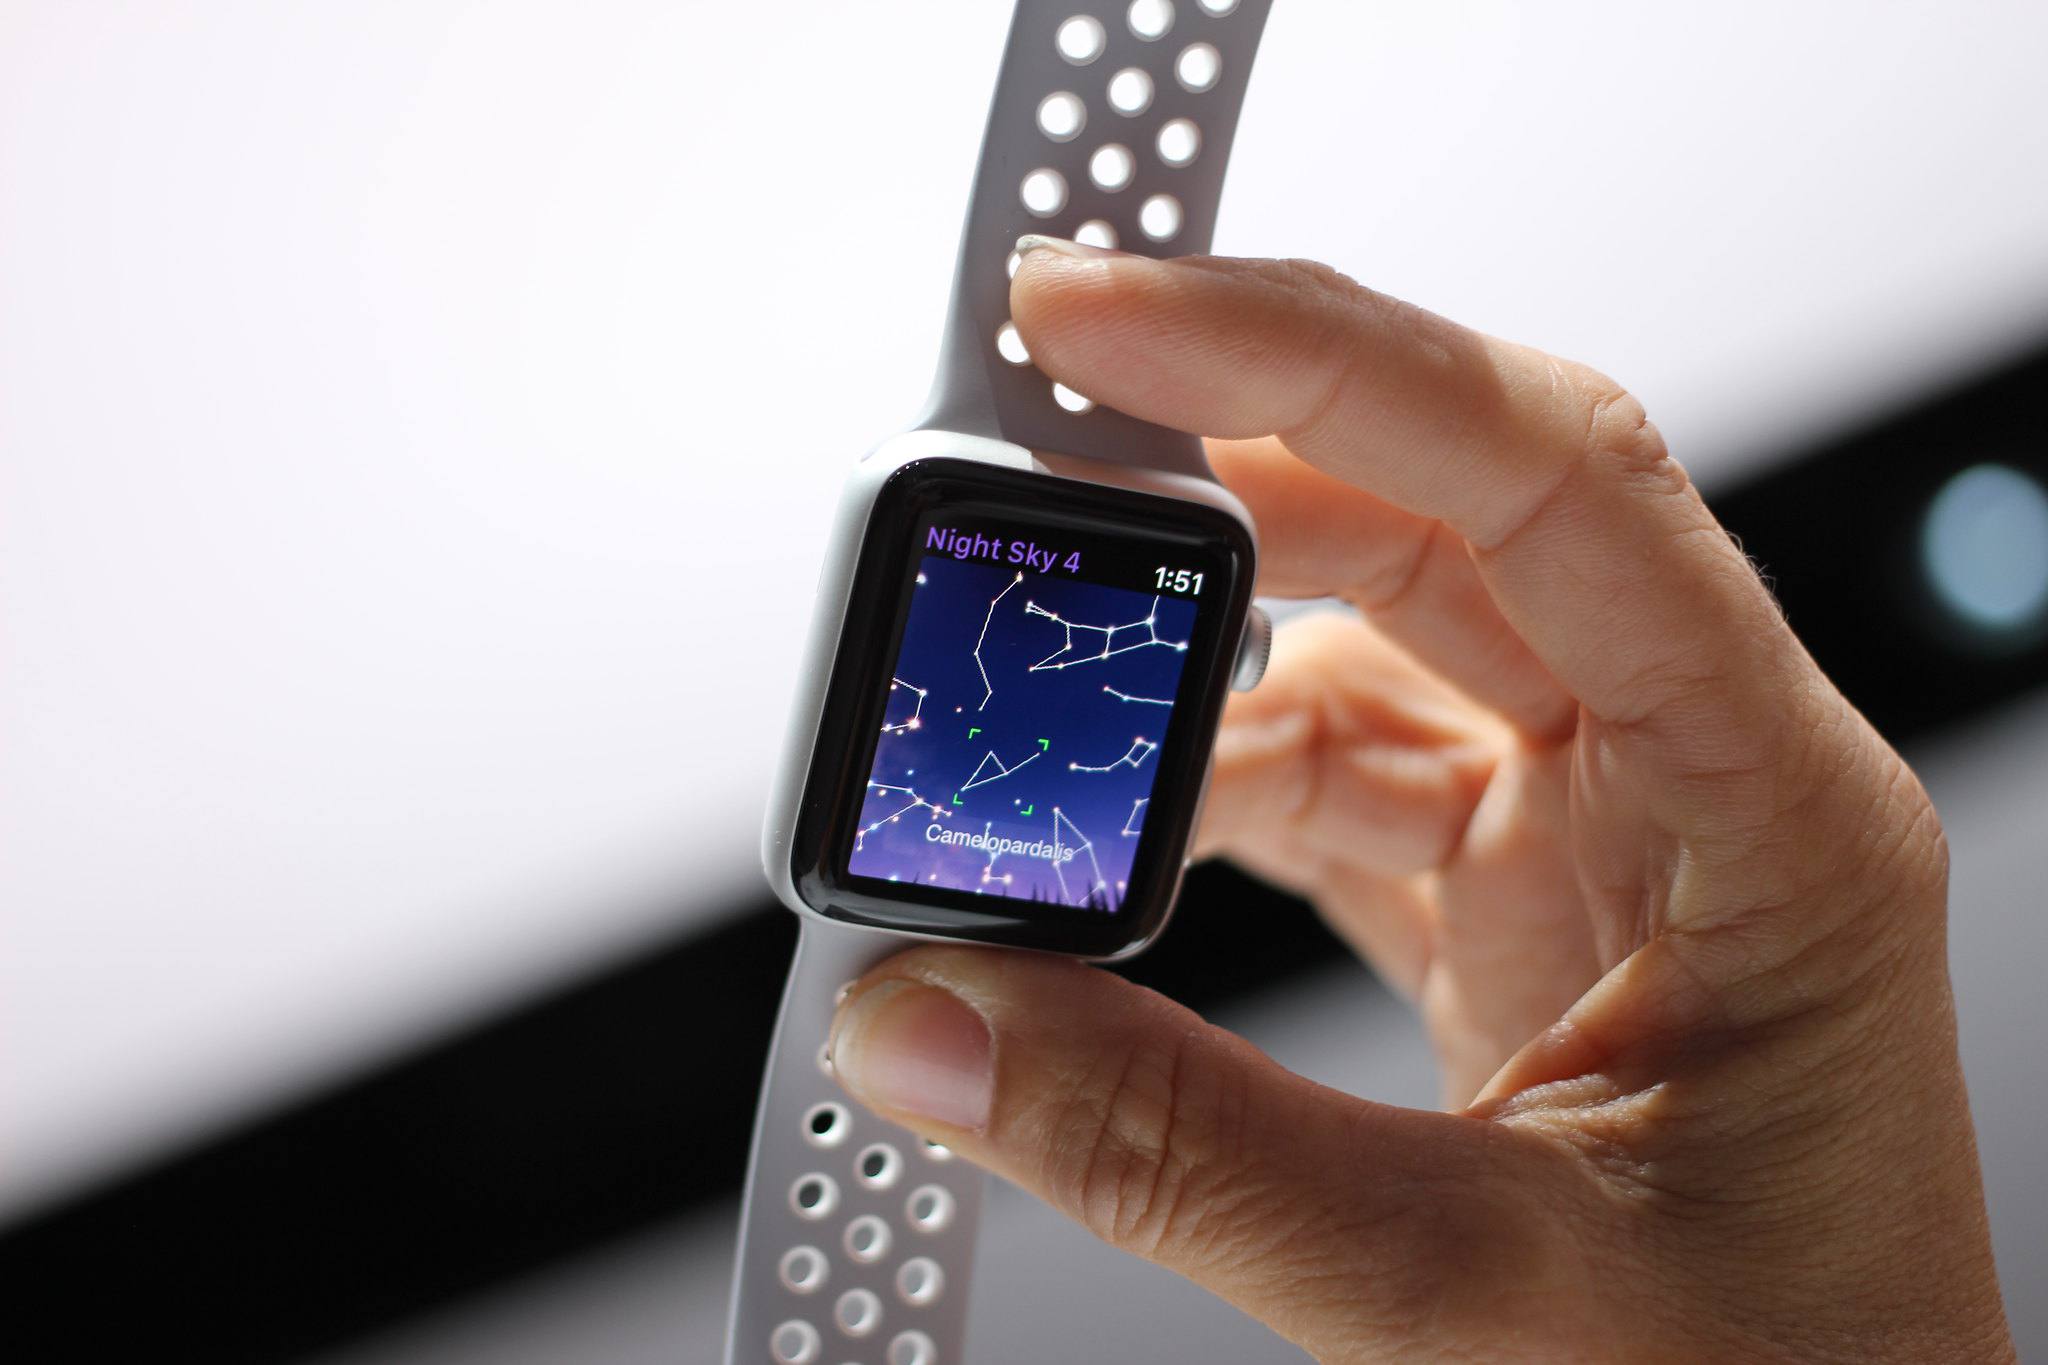 Ruka držící hodinky Apple Apple Watch s Night Sky 4 na obrazovce